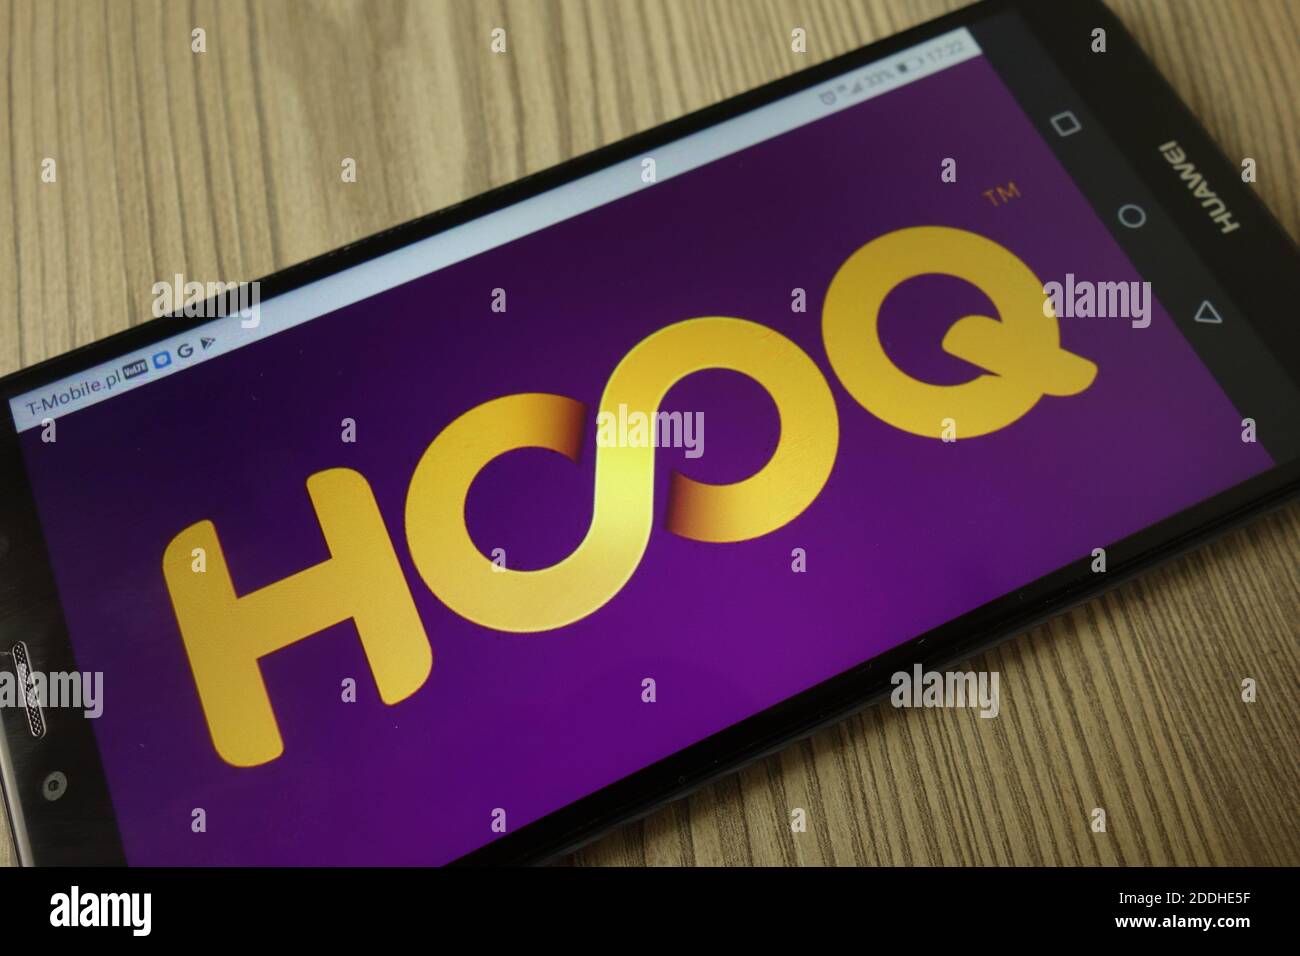 KONSKIE, POLEN - 21. Dezember 2019: HOOQ Video Streaming Service Logo auf dem Handy angezeigt Stockfoto